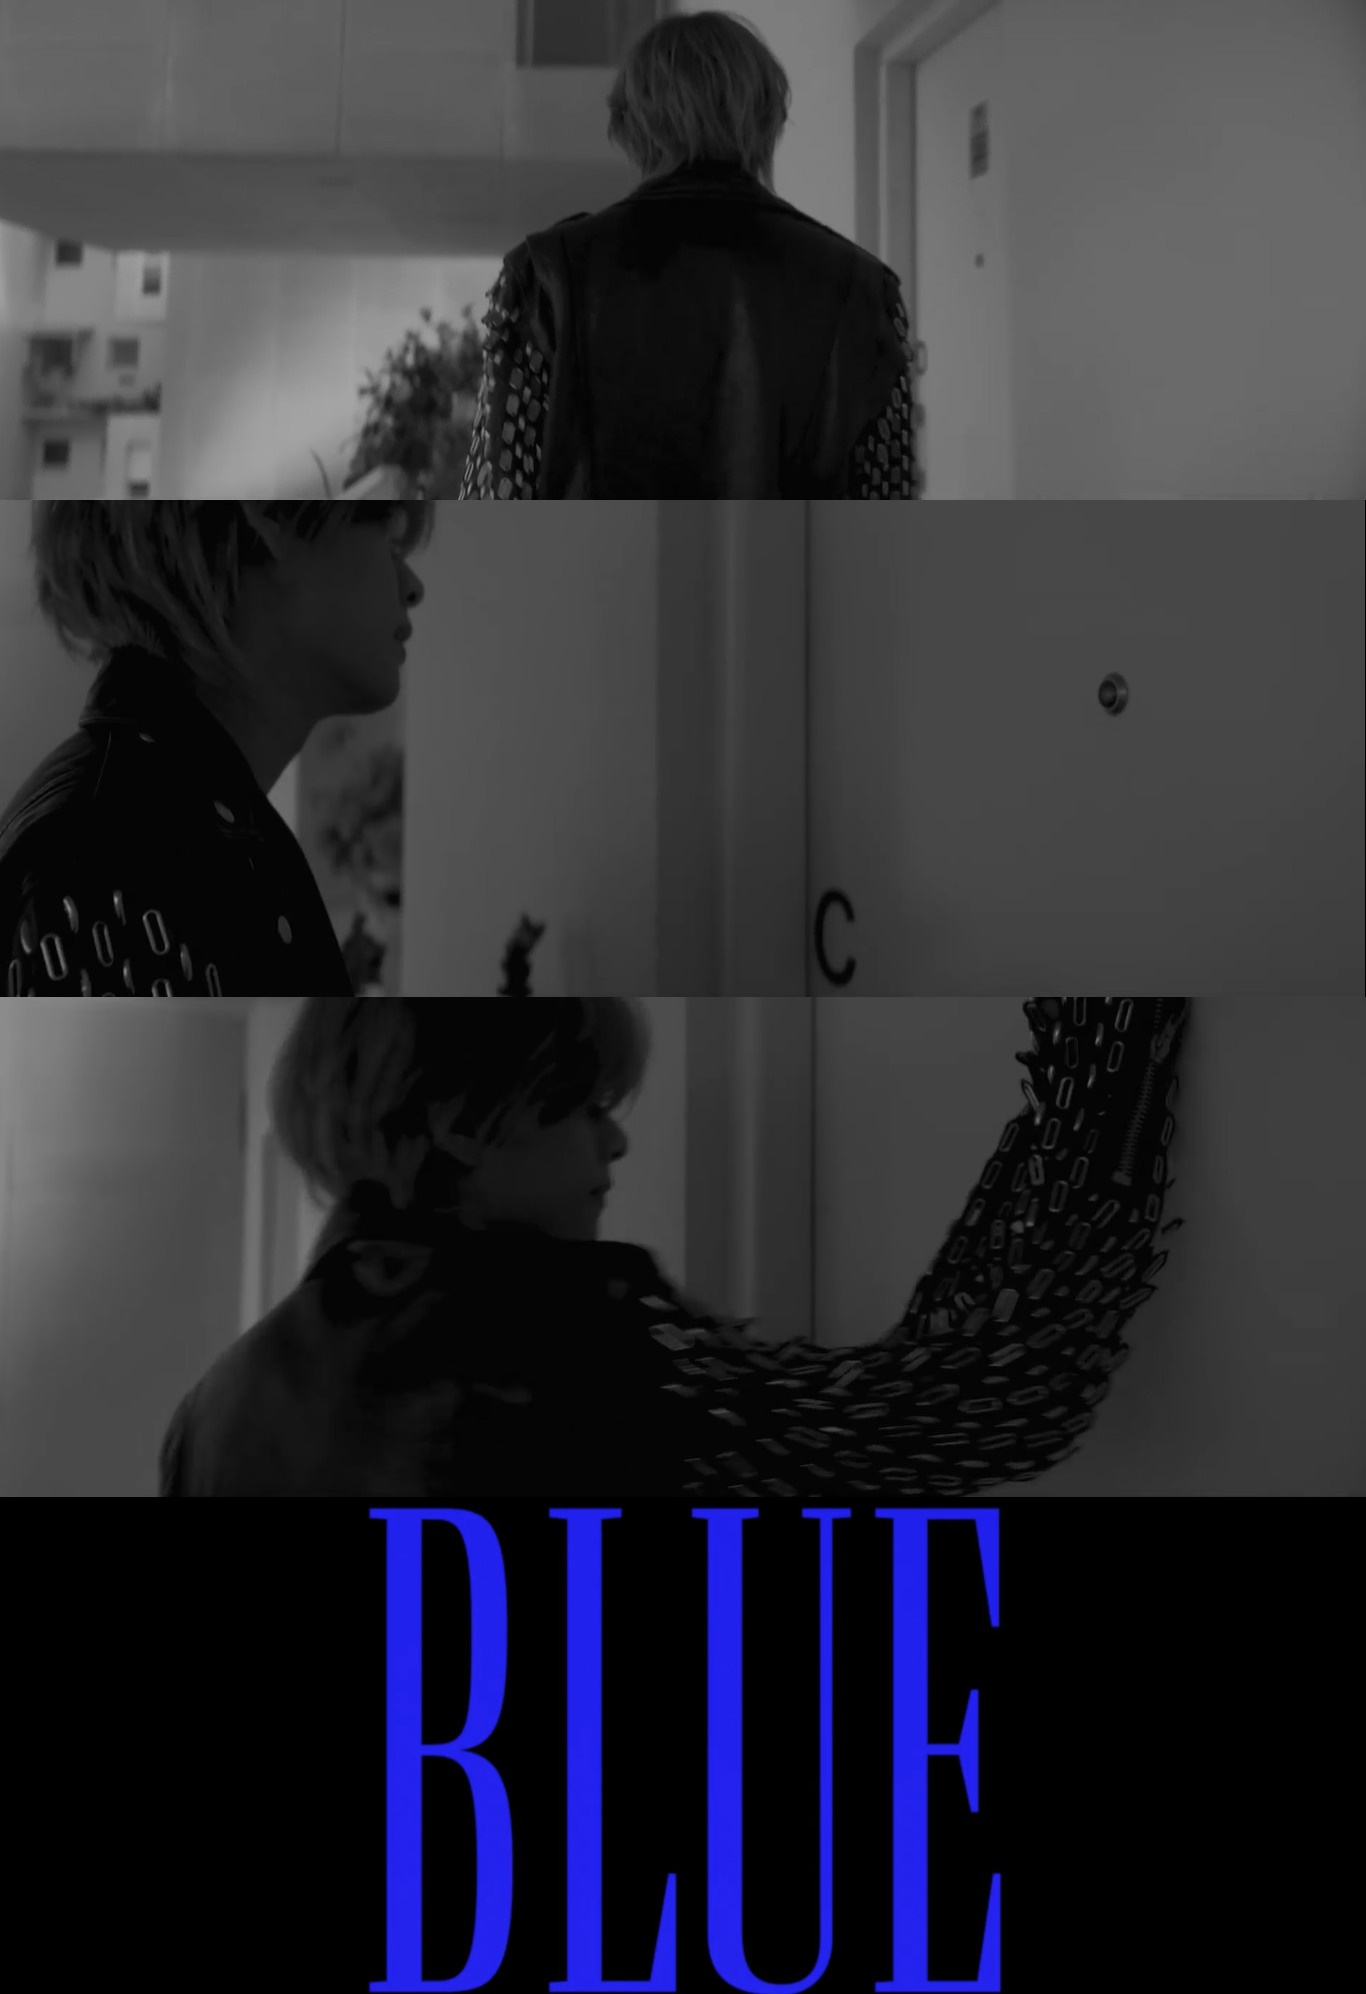 BTS V、映画のような雰囲気「Blue」MV1次ティーザー...強烈な白黒映像